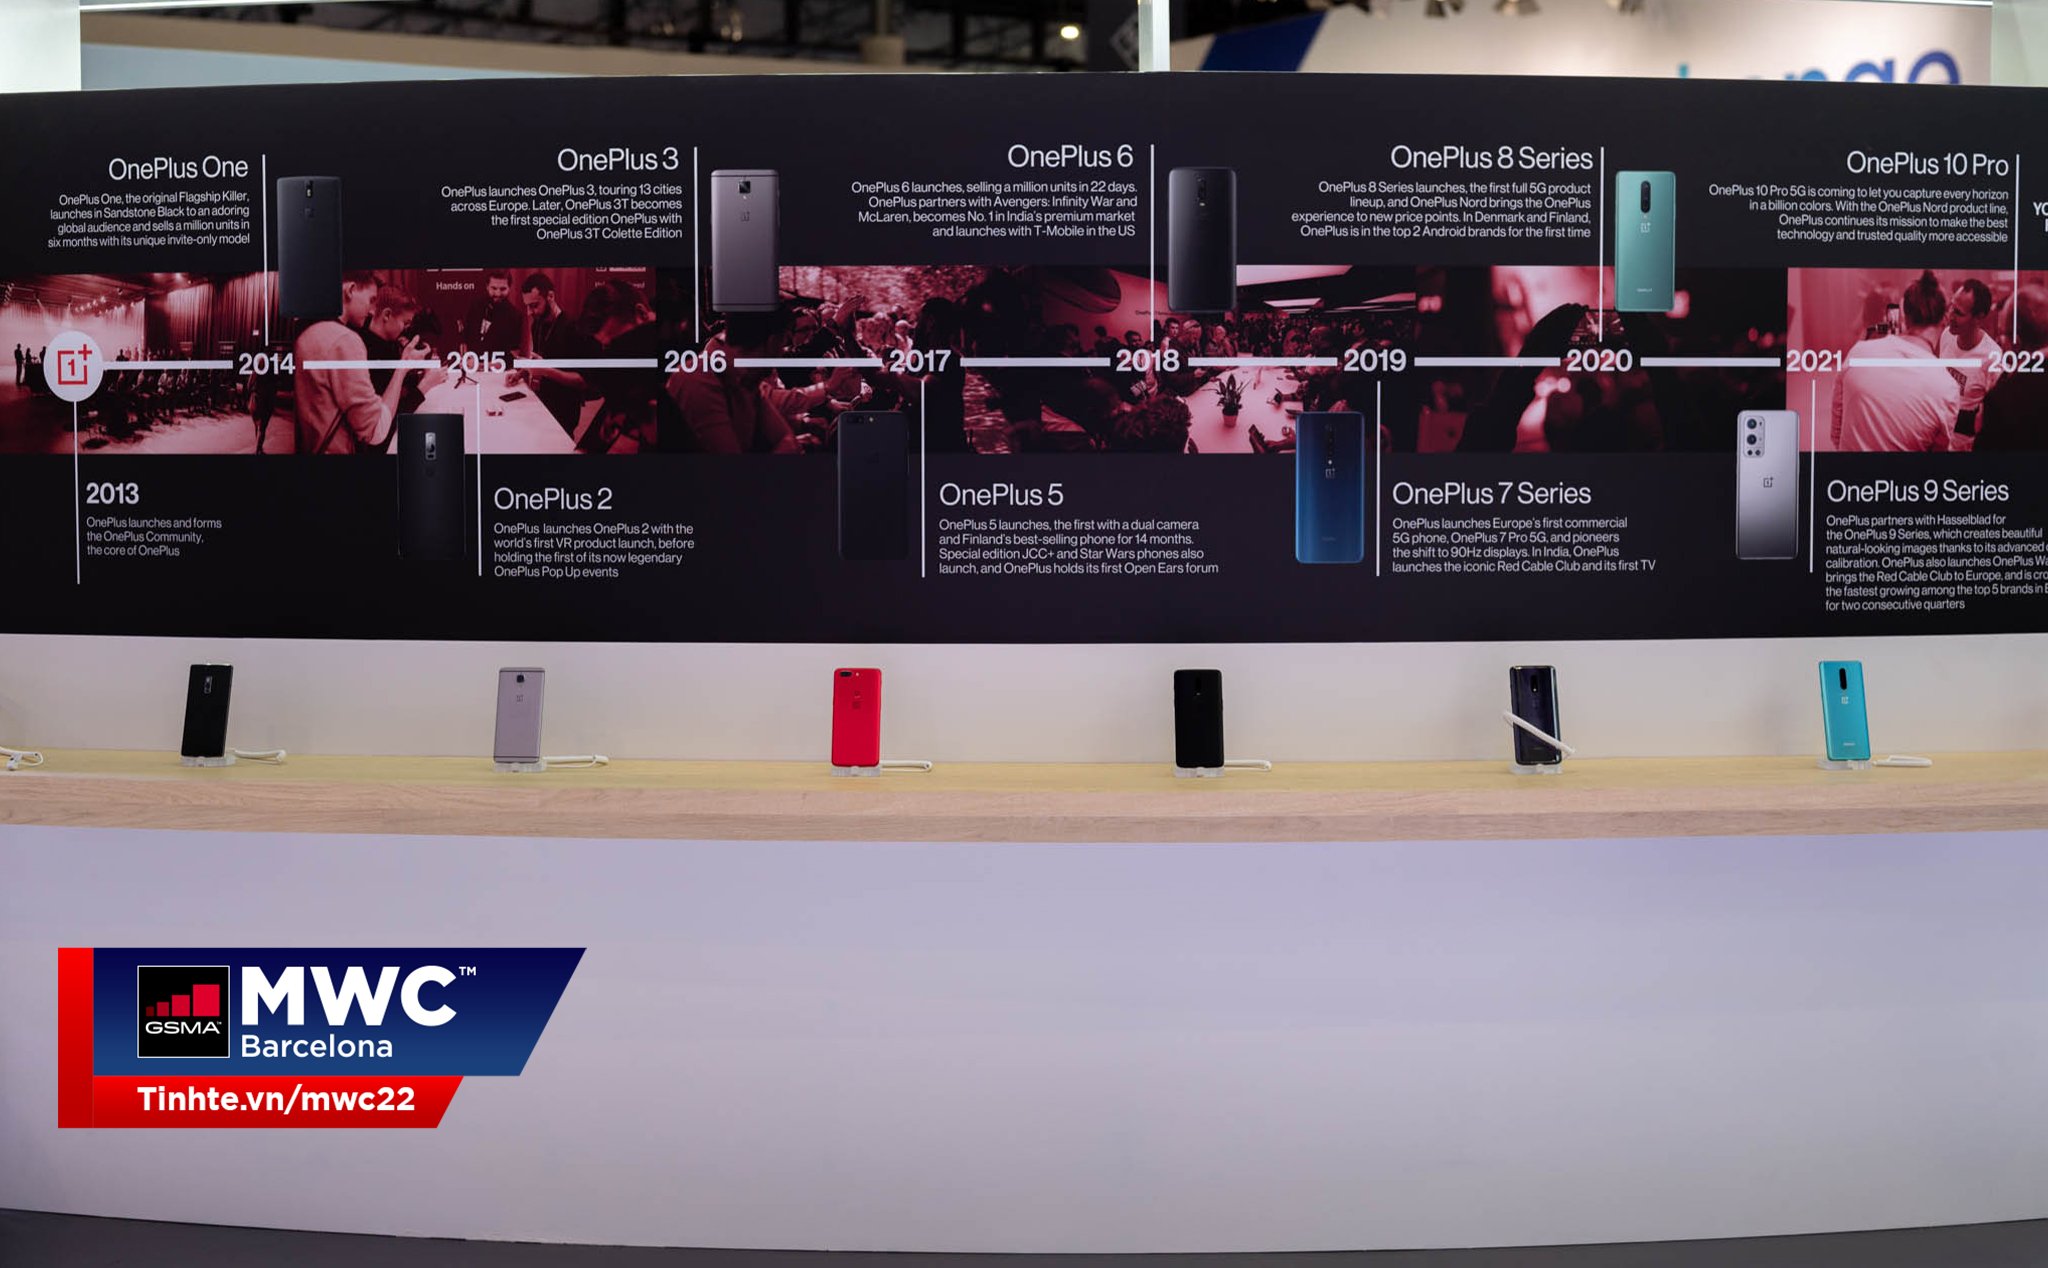 #MWC22: Nhìn lại những chiếc máy tiêu biểu của OnePlus